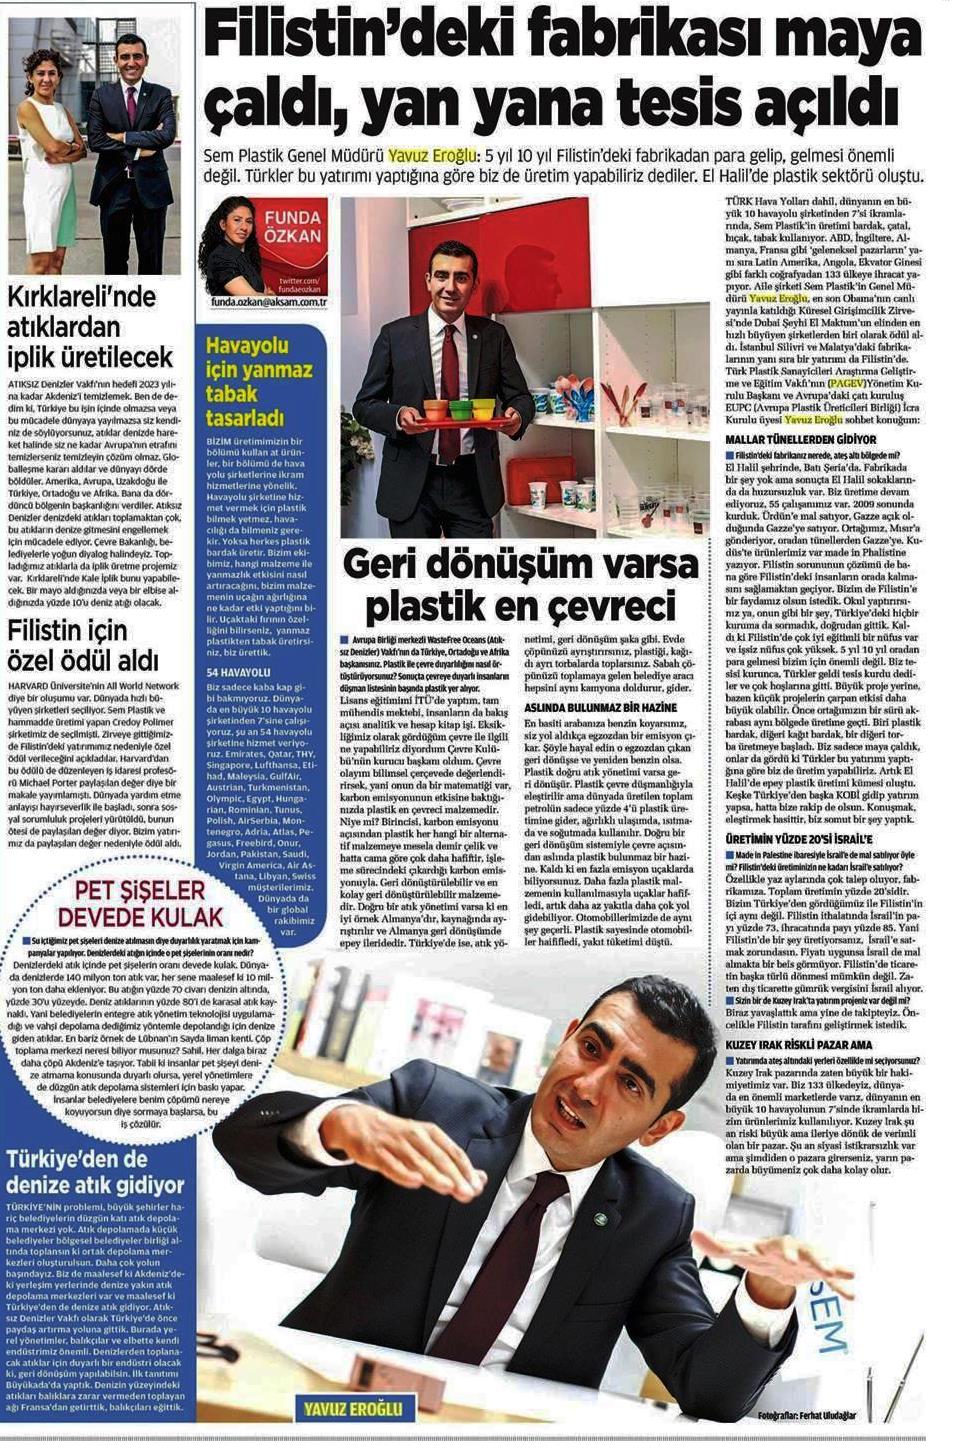 Akşam Gazetesi Yazarı Funda Özkan'ın SEM Plastik Genel Müdürü YAVUZ EROĞLU ile 31.8.2014 tarihli söyleşisi.